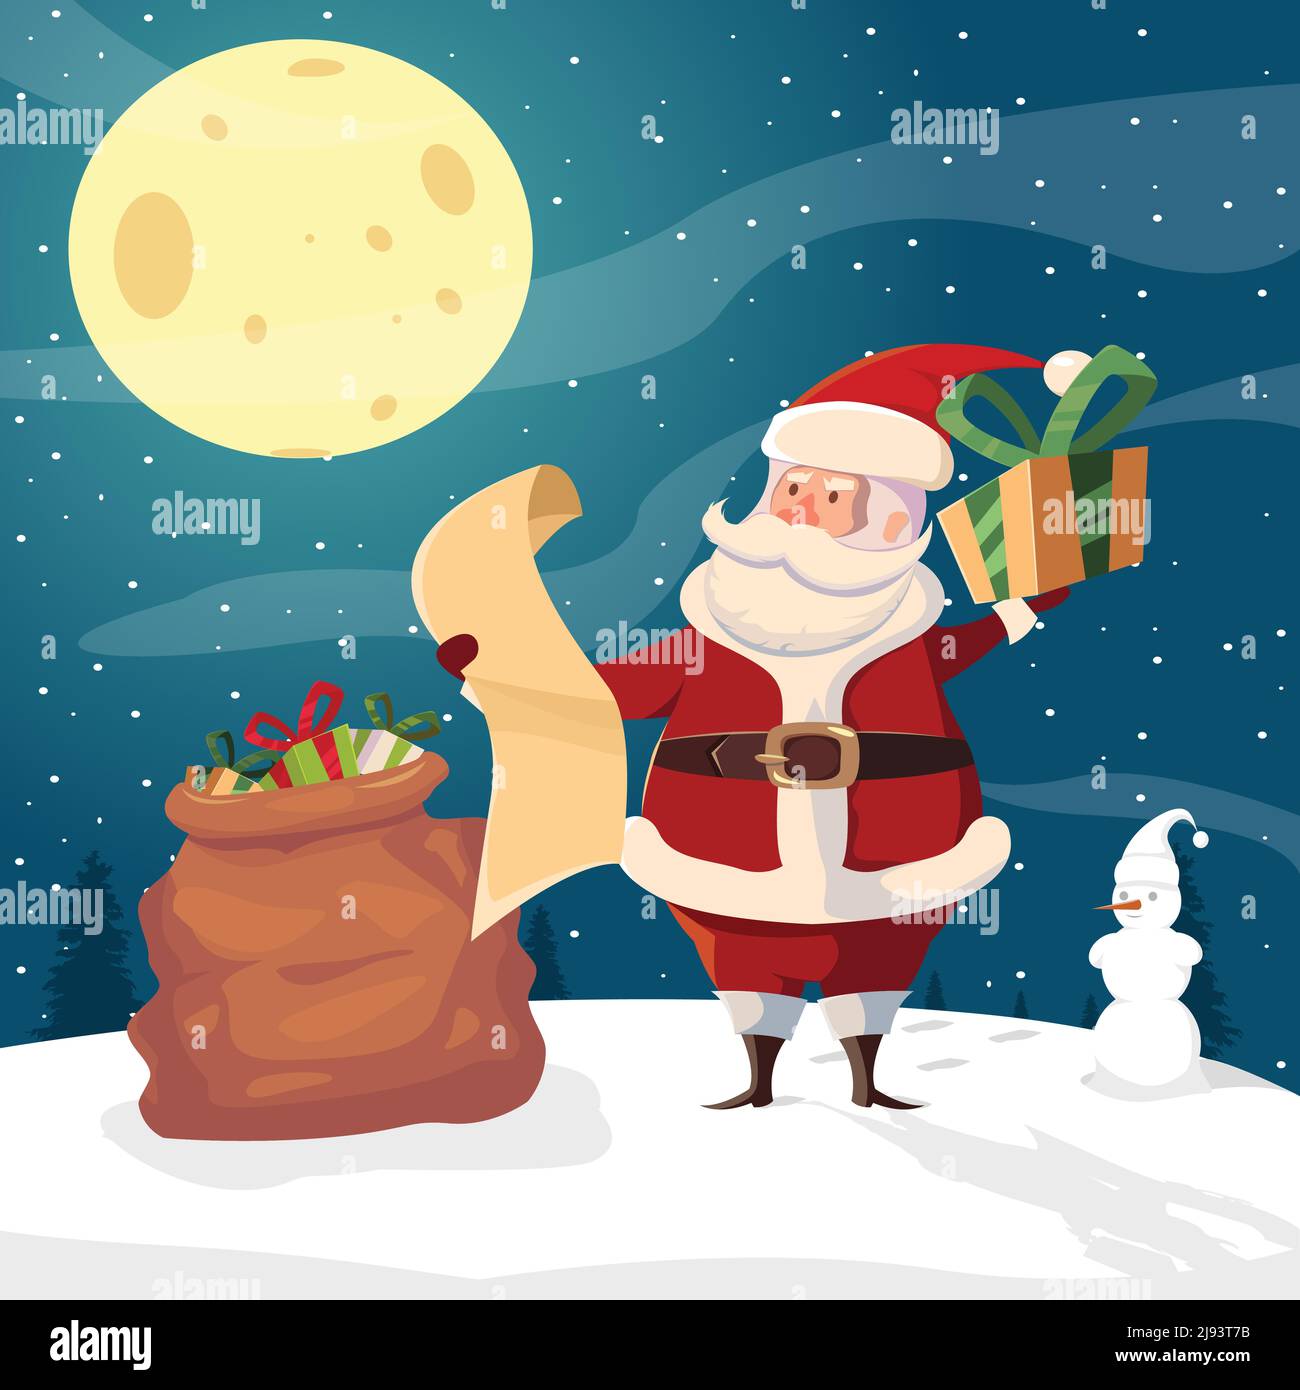 Fond plat avec personnage de dessin animé drôle du Père Noël dans la neige forêt avec cadeaux sac lune et illustration de vecteur bonhomme de neige Illustration de Vecteur